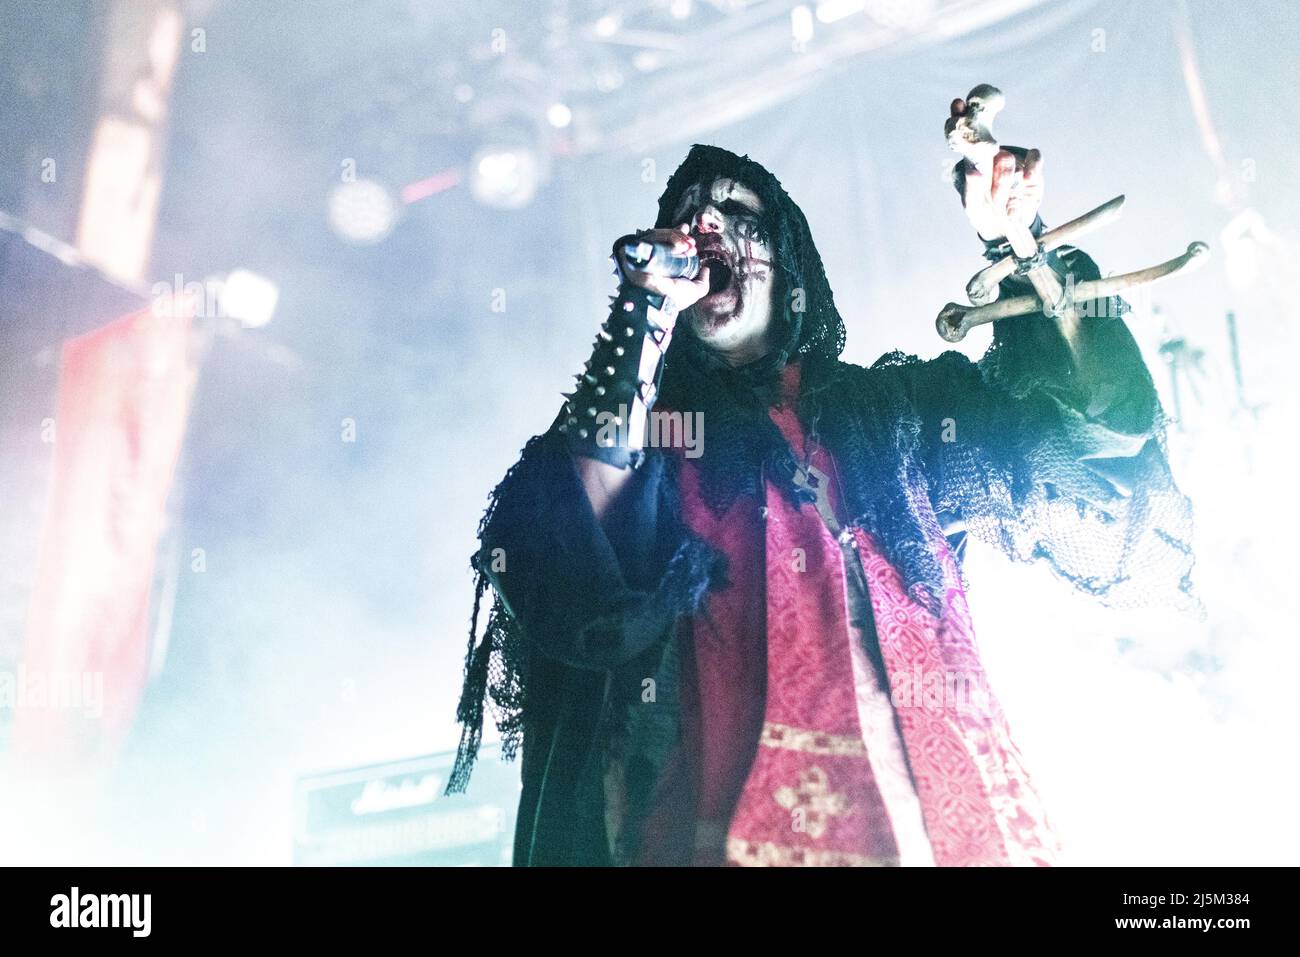 Oslo, Norwegen. 16., April 2022. Die norwegische Black Metal Band Mayhem spielt im Rahmen des Festivals Inferno Metal Festival 2022 in Oslo ein Live-Konzert im Rockefeller. Hier ist Sänger Attila Csihar live auf der Bühne zu sehen. (Foto: Gonzales Photo - Terje Dokken). Stockfoto